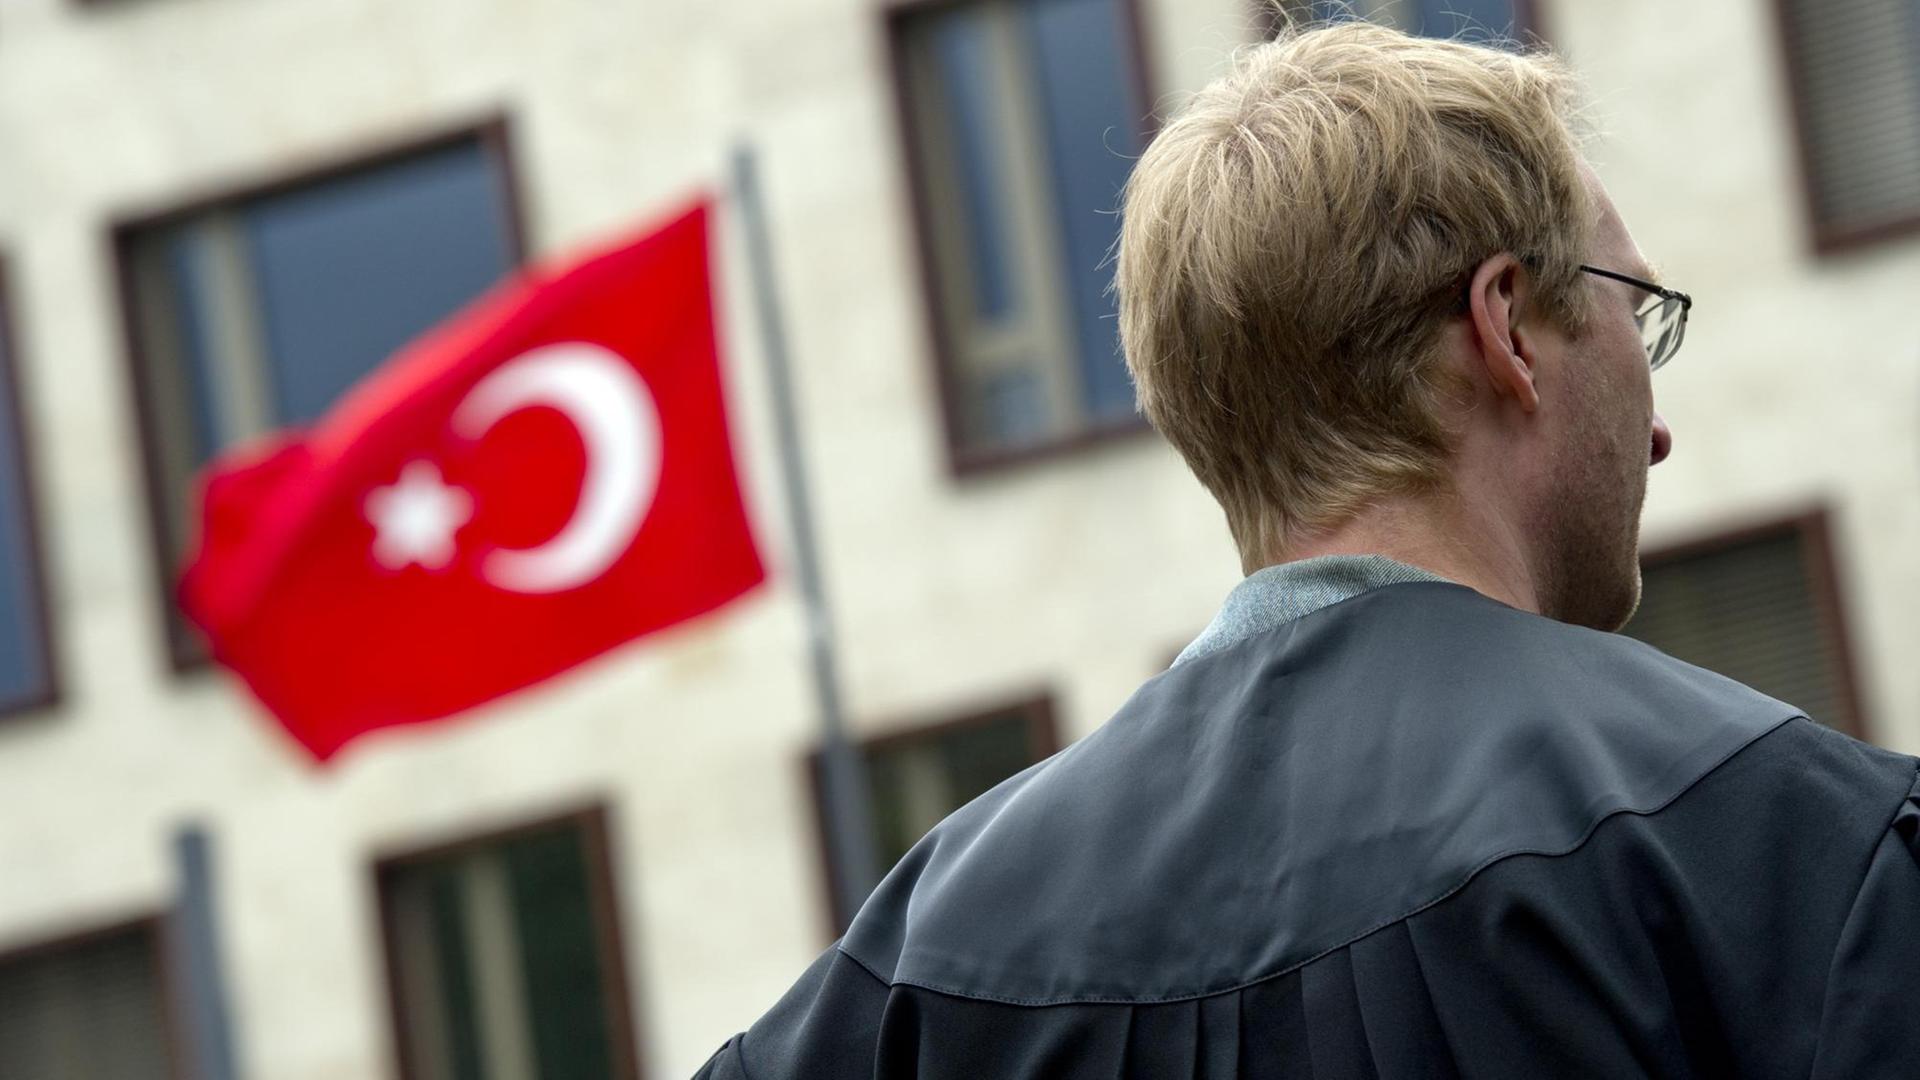 Eine türkische Flagge an einem Gebäude, vor dem ein Richter von hinten zu sehen ist.